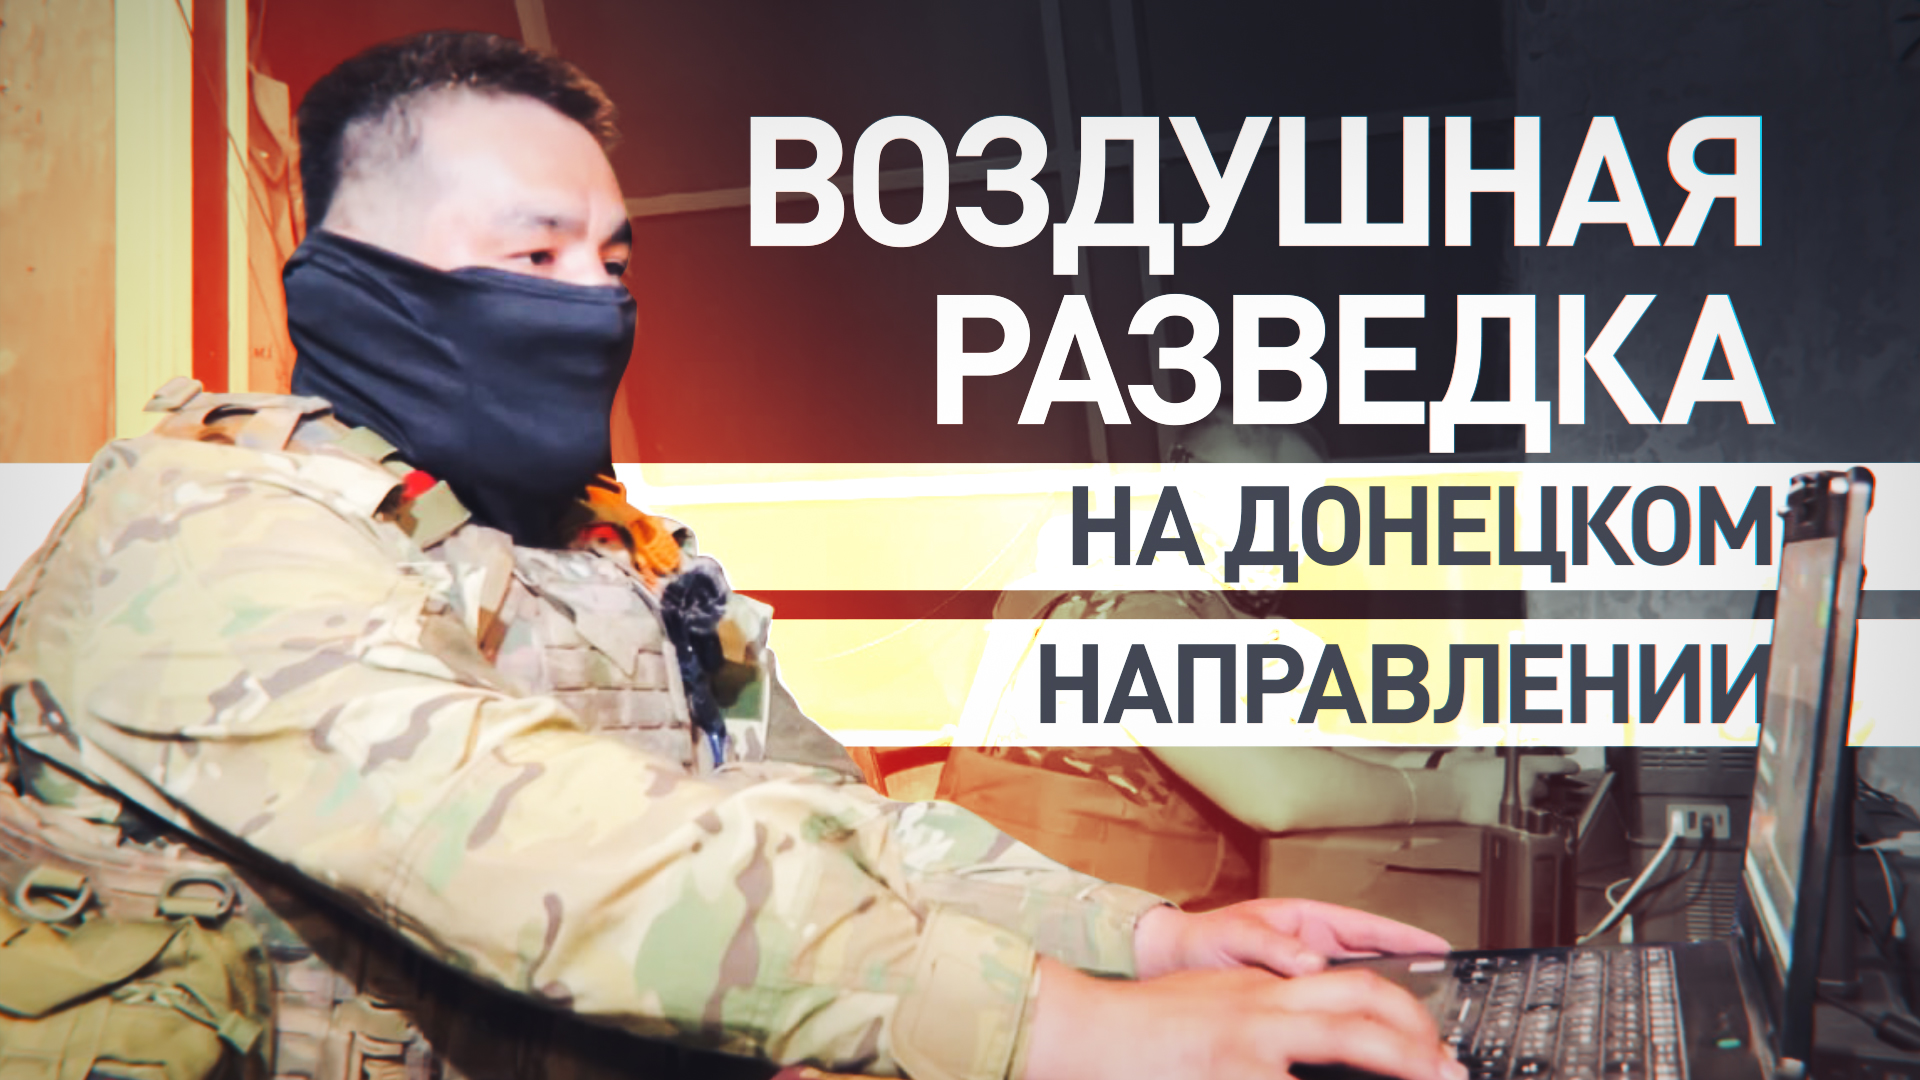 Следят за противником ночью и днём: как работают бойцы аэроразведки на Донецком направлении